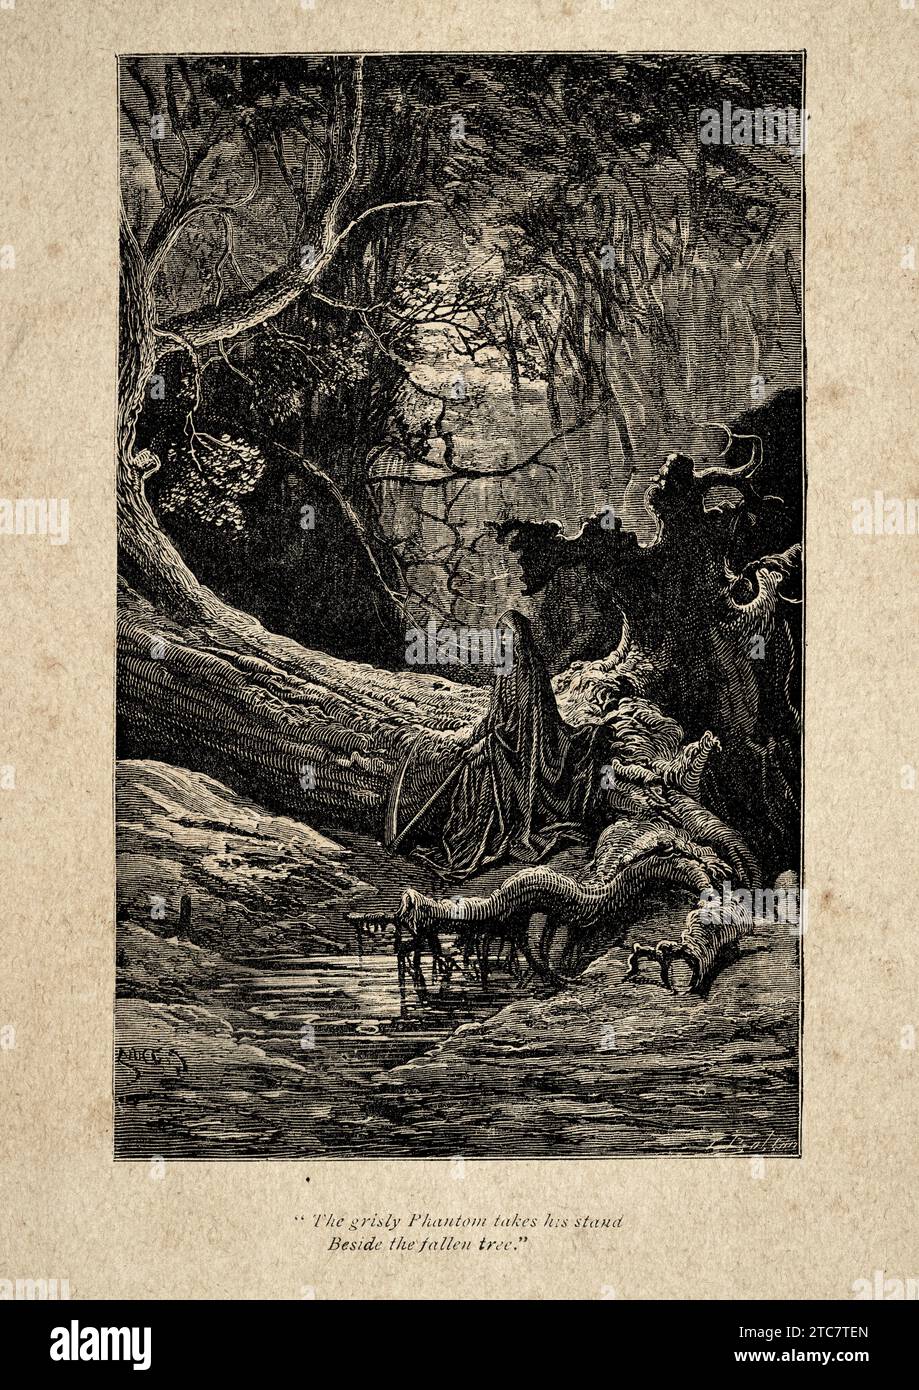 Grim Reaper, Death, Waiting in a Dark Forest, Horror, Spooky, Vintage Illustration aus einem Gedicht von Thomas Hood, das gruselige Phantom nimmt seinen Stand Stockfoto